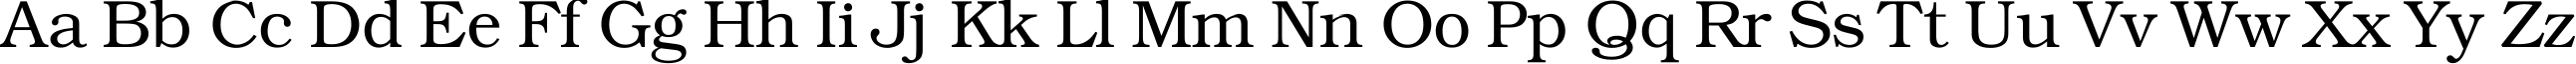 Пример написания английского алфавита шрифтом KacstTitle